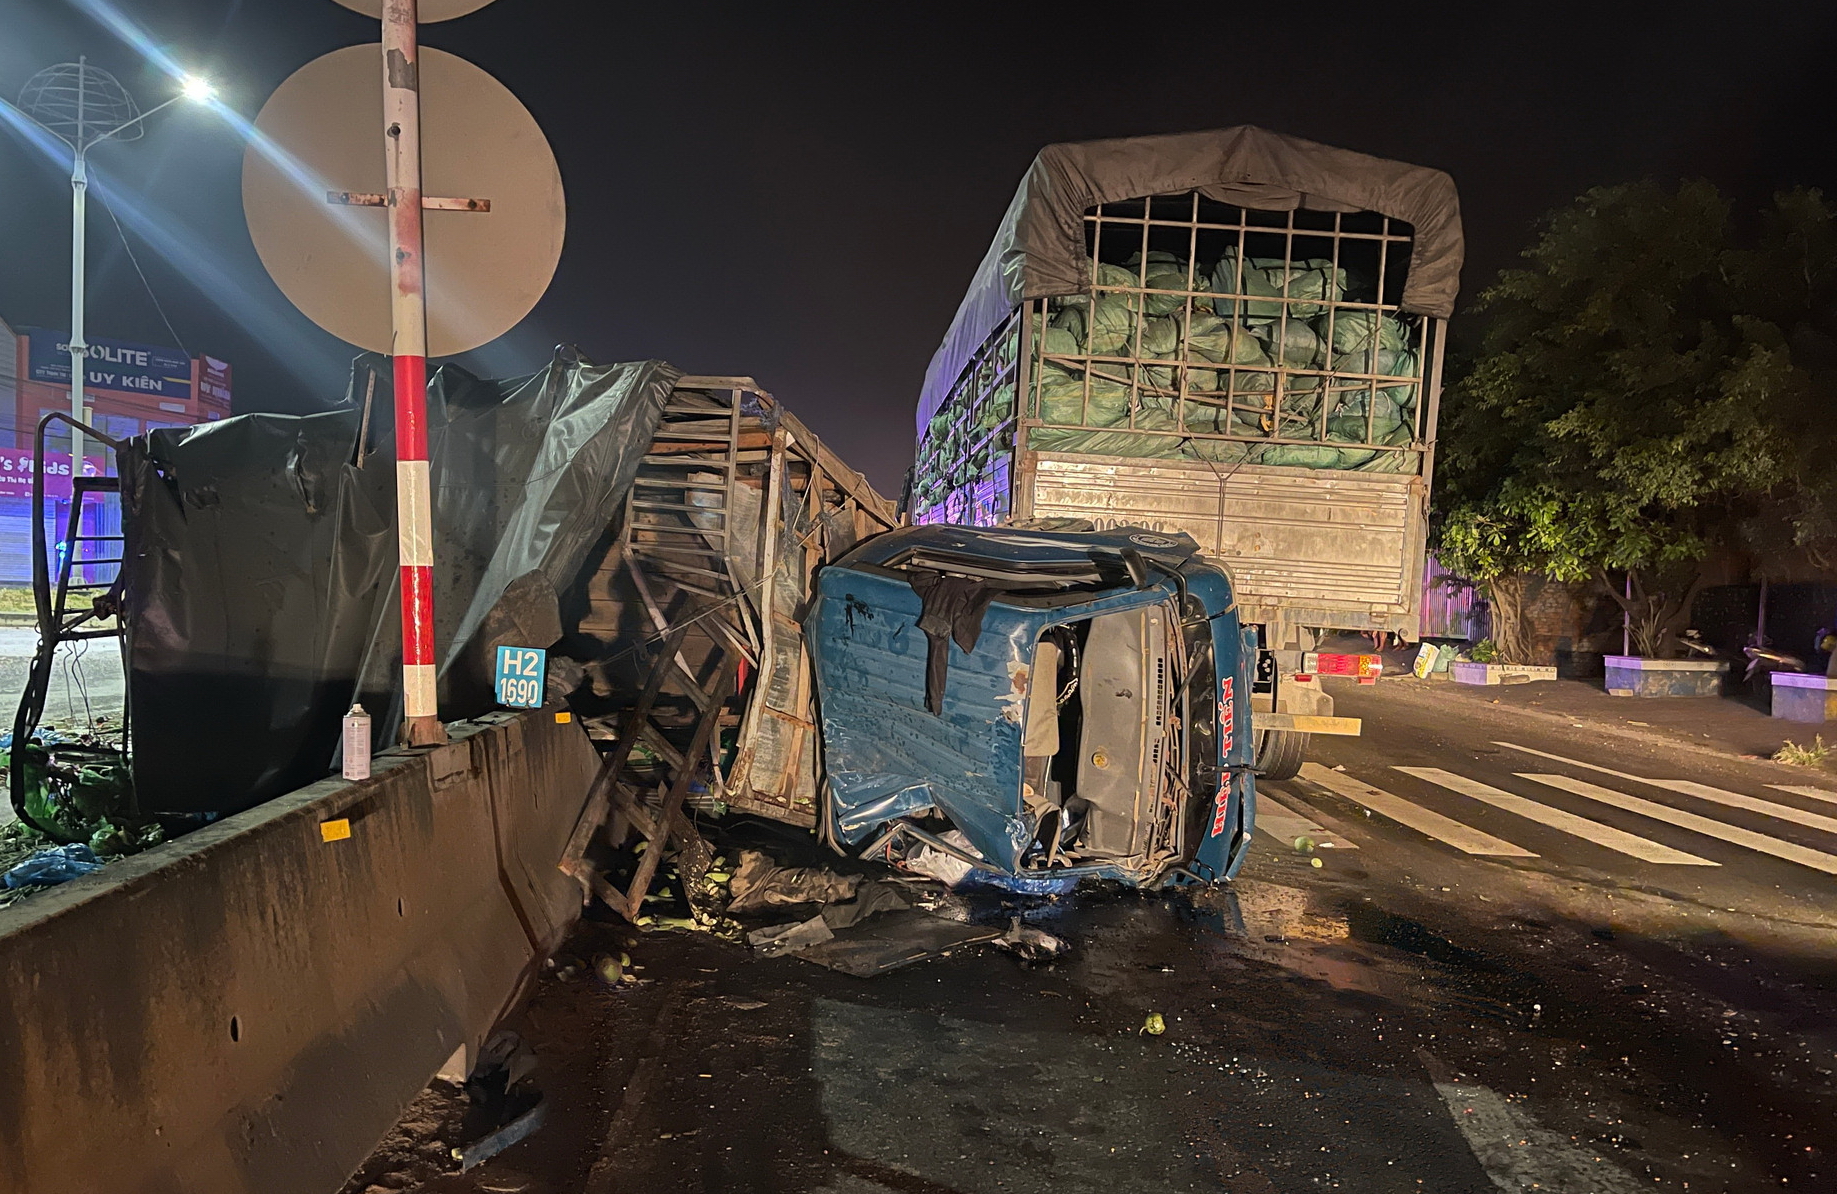 Bình Thuận: Tai nạn giao thông liên hoàn giữa 3 xe tải khiến vợ chết chồng bị thương nặng - Ảnh 1.